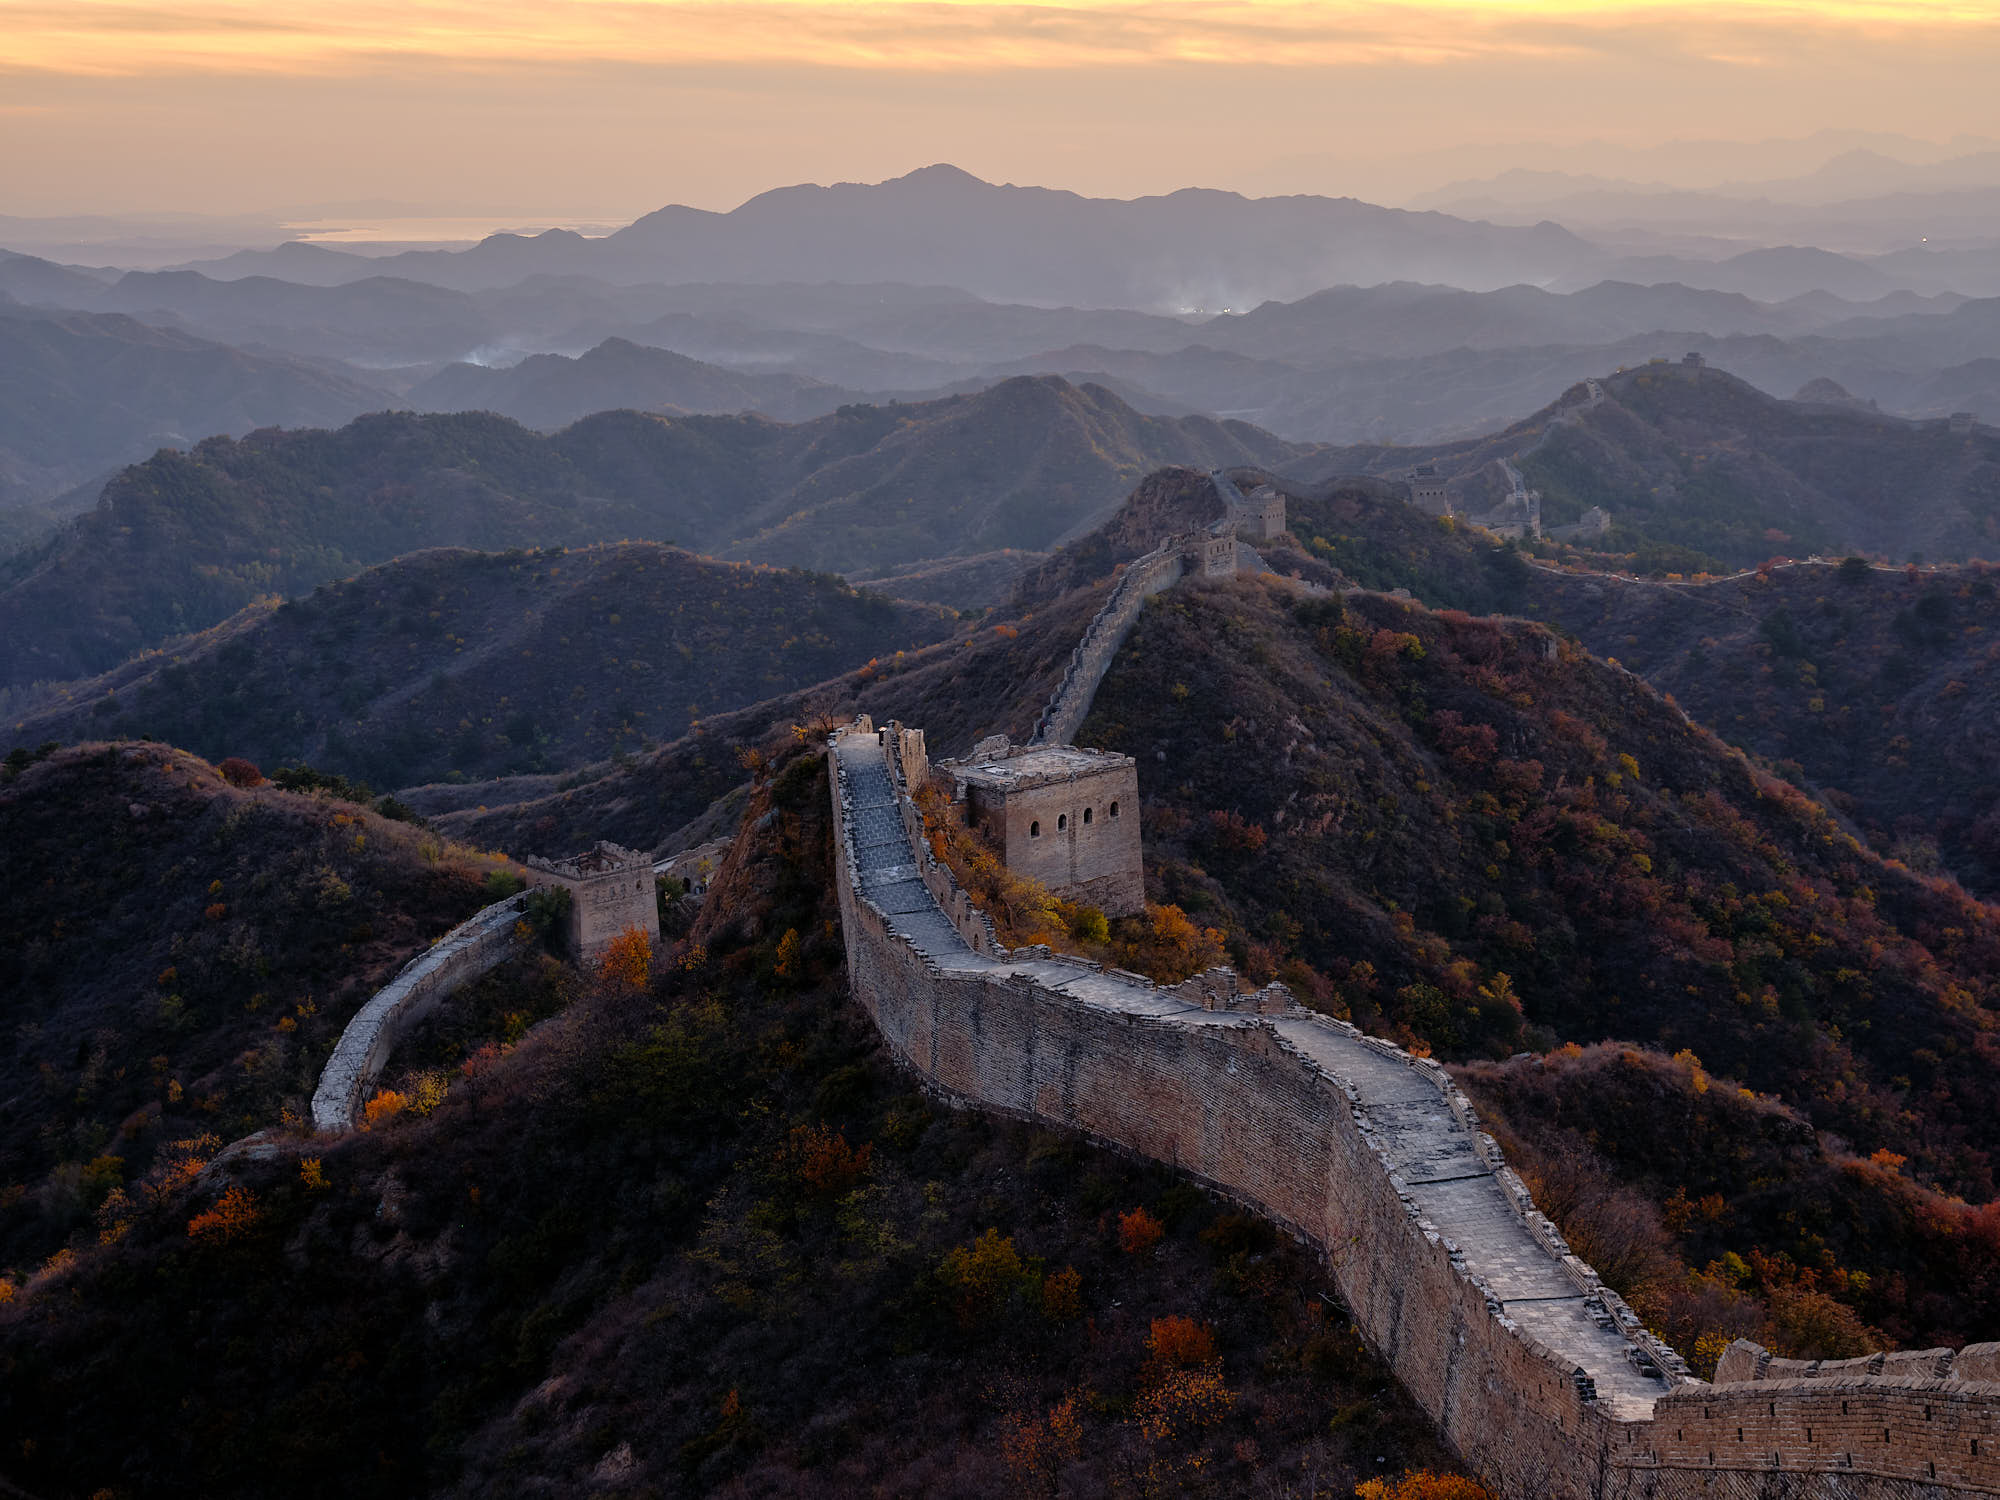 Jinshanling Great Wall of China at sunset